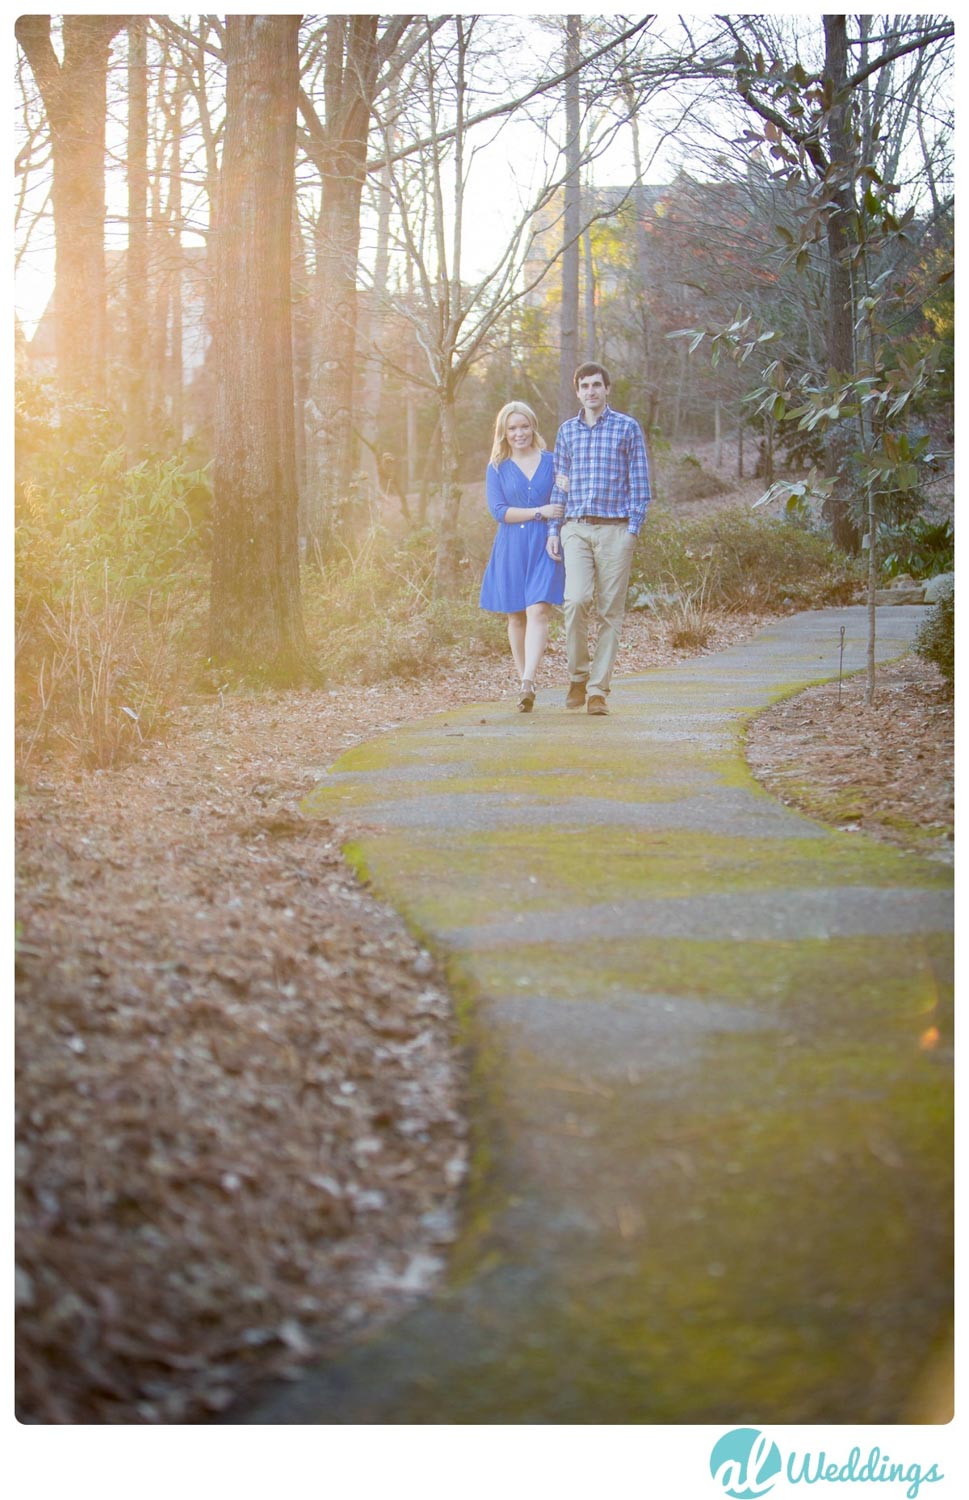 Alabama Wedding Photographer,Birmingham,Blue,Botanical Gardens,Engaged,